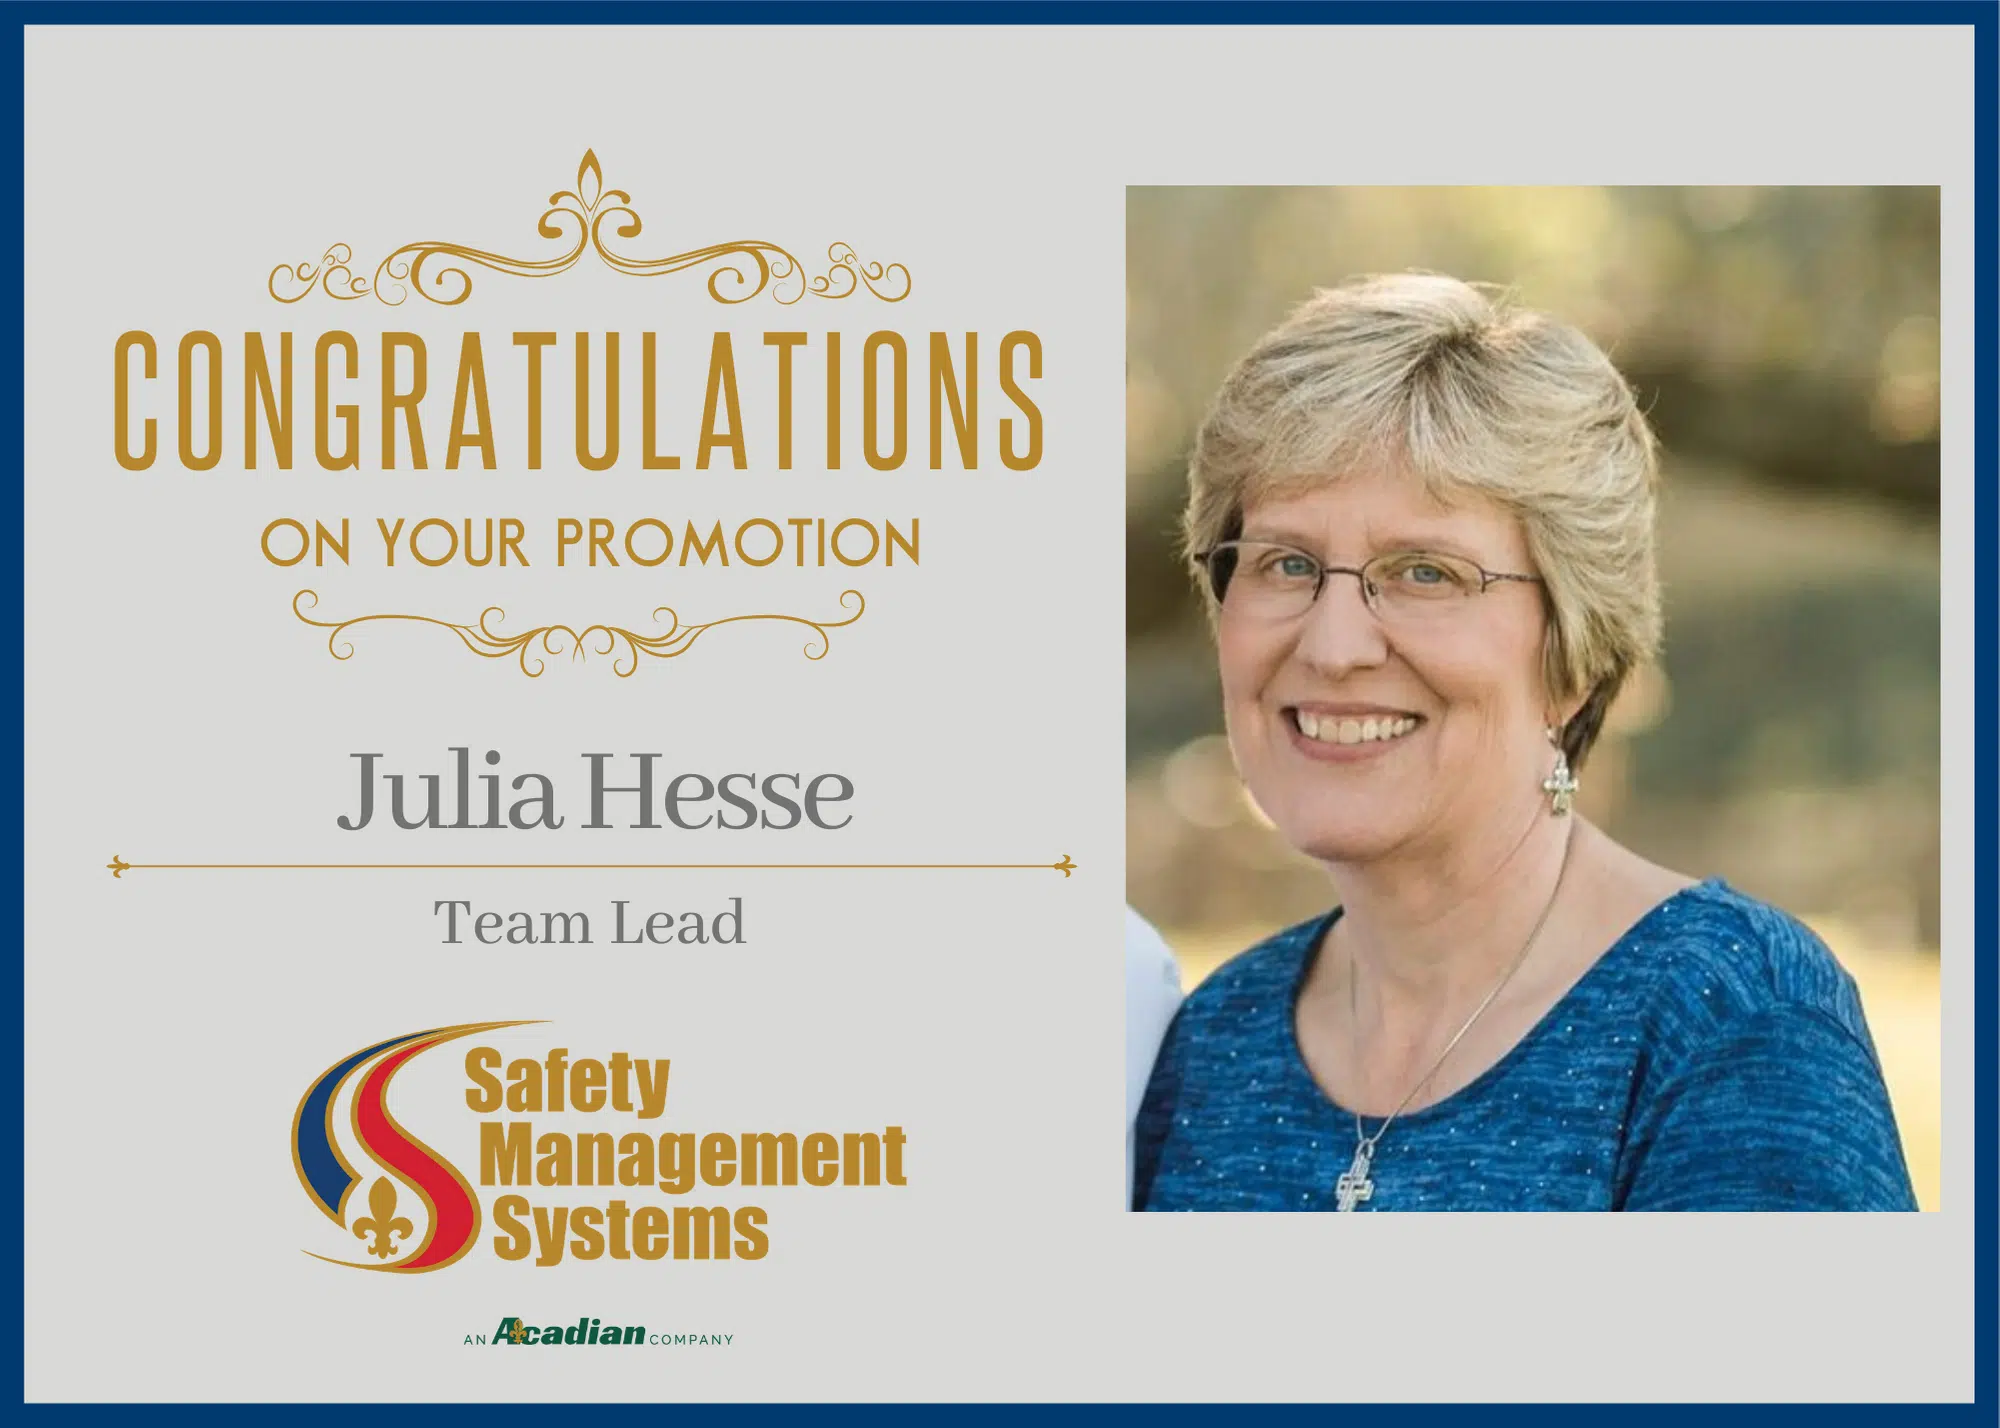 Julia Hesse Promotion Team Lead